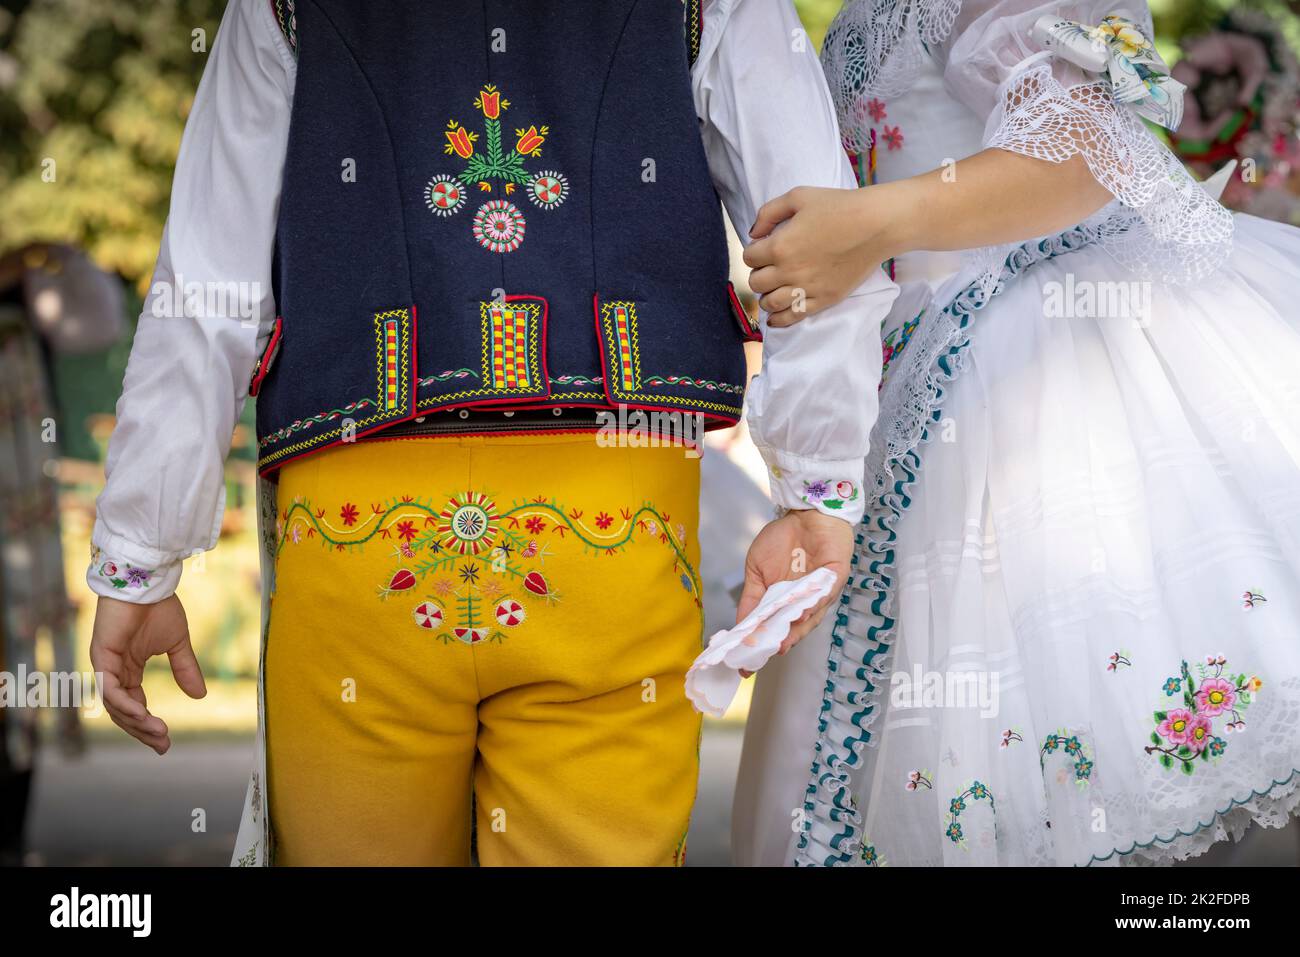 Détail du costume folklorique, Rakvice, Moravie du Sud, République tchèque Banque D'Images